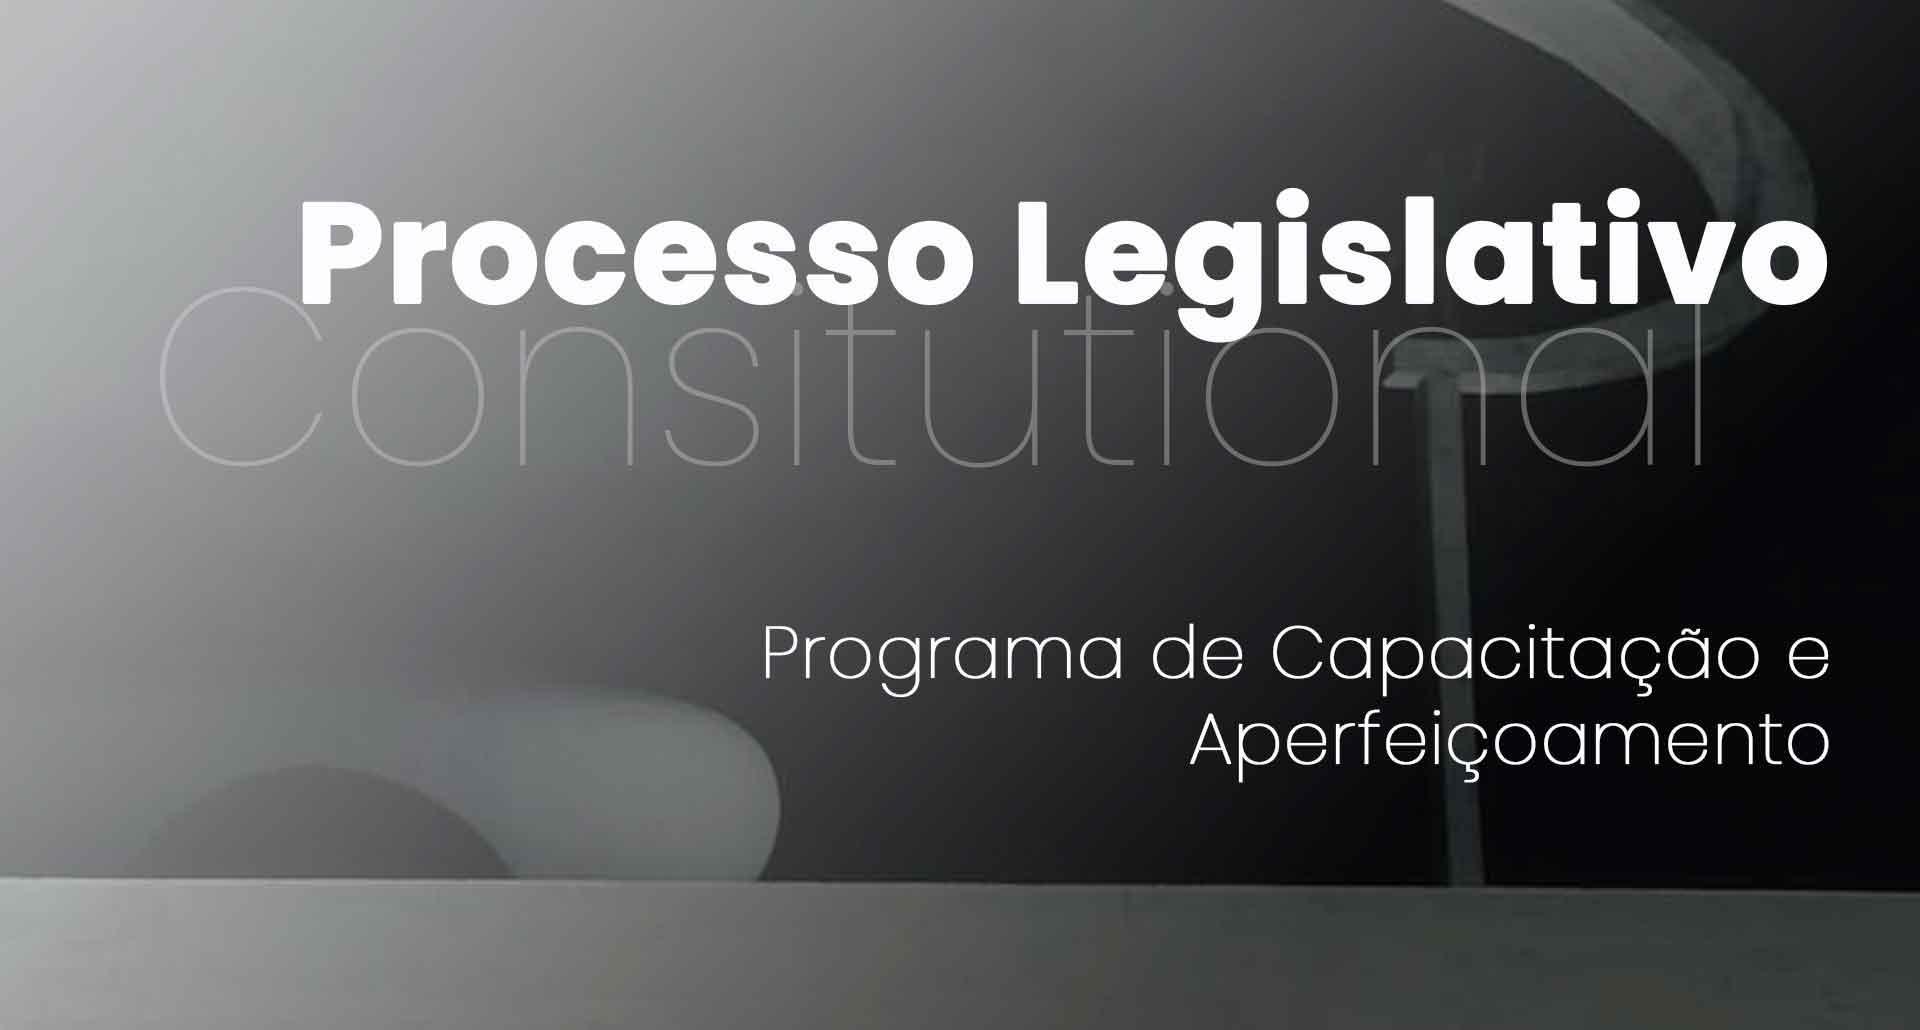 Processo Legislativo Constitucional. DF